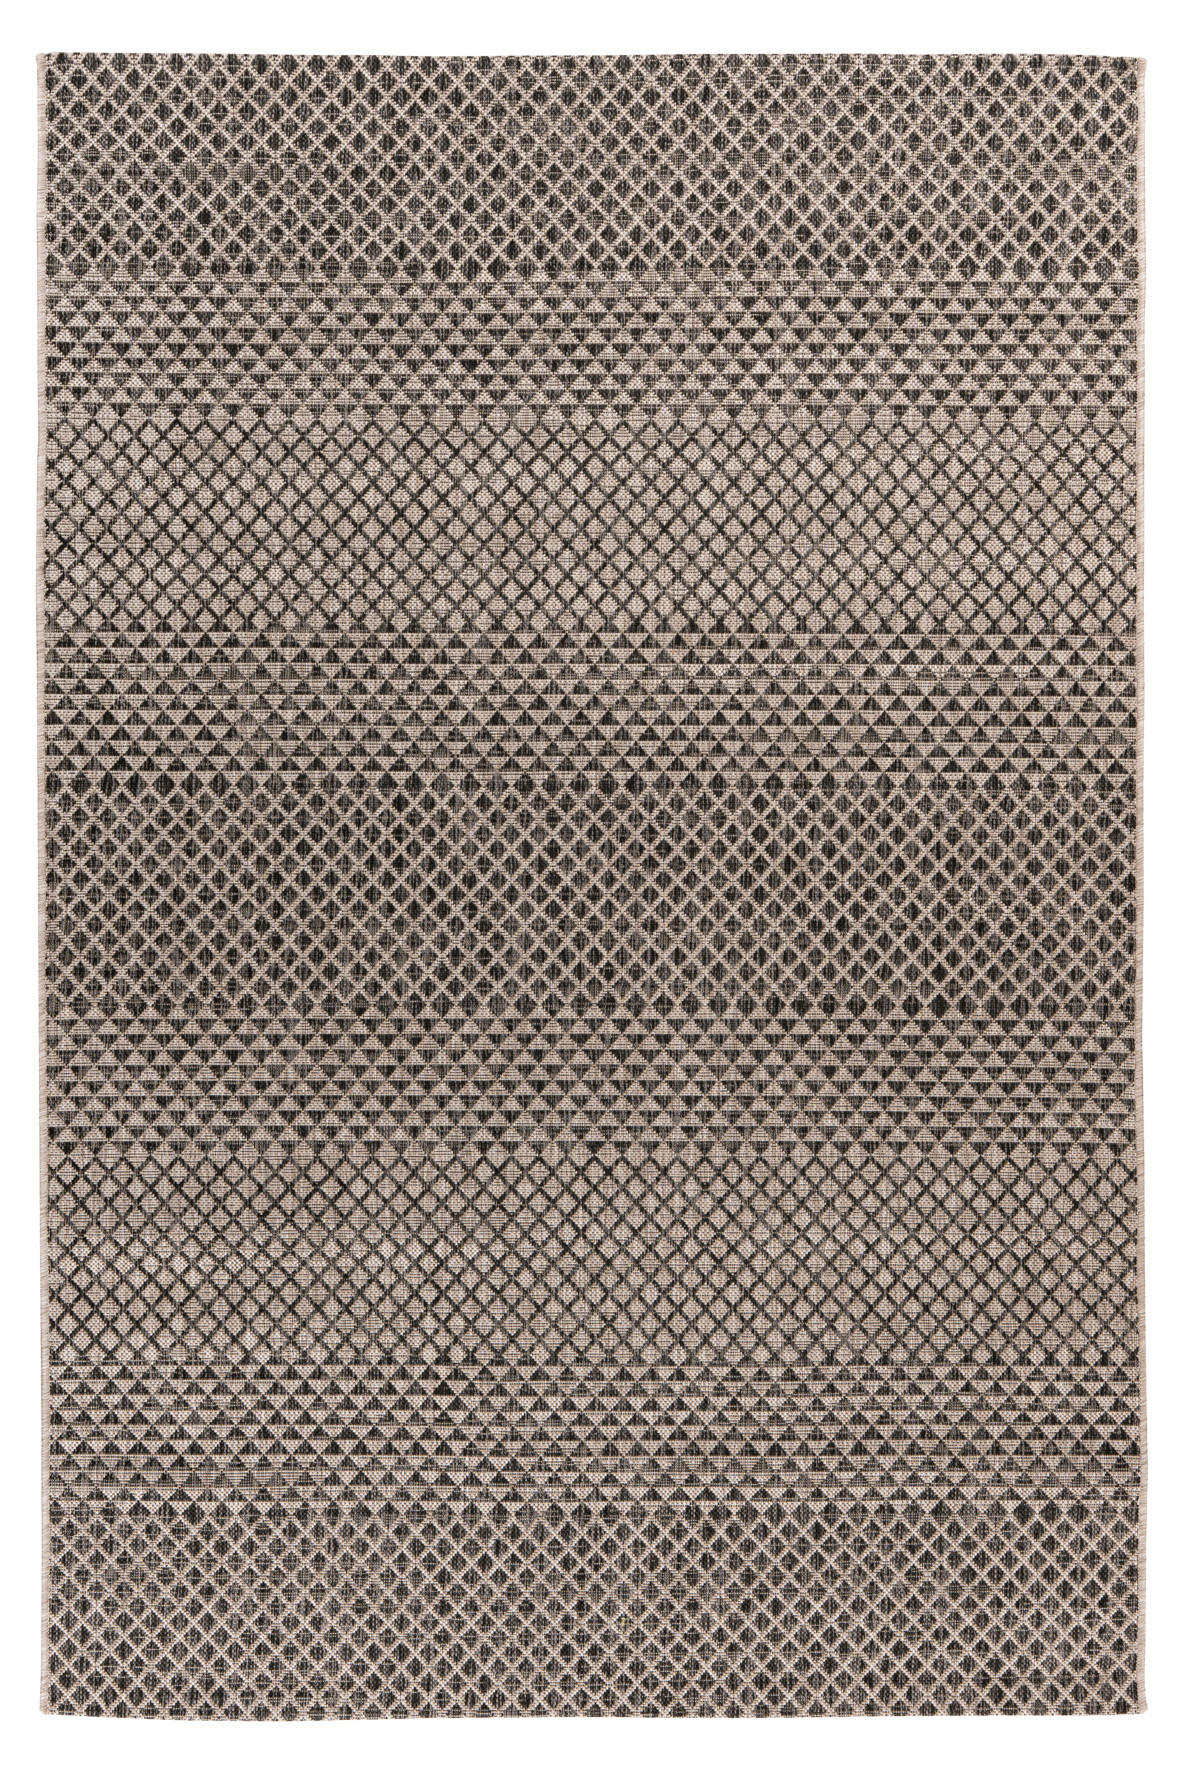 In- und Outdoorteppich 160/230 cm  - Graubraun/Grau, Design, Textil (160/230cm) - Novel